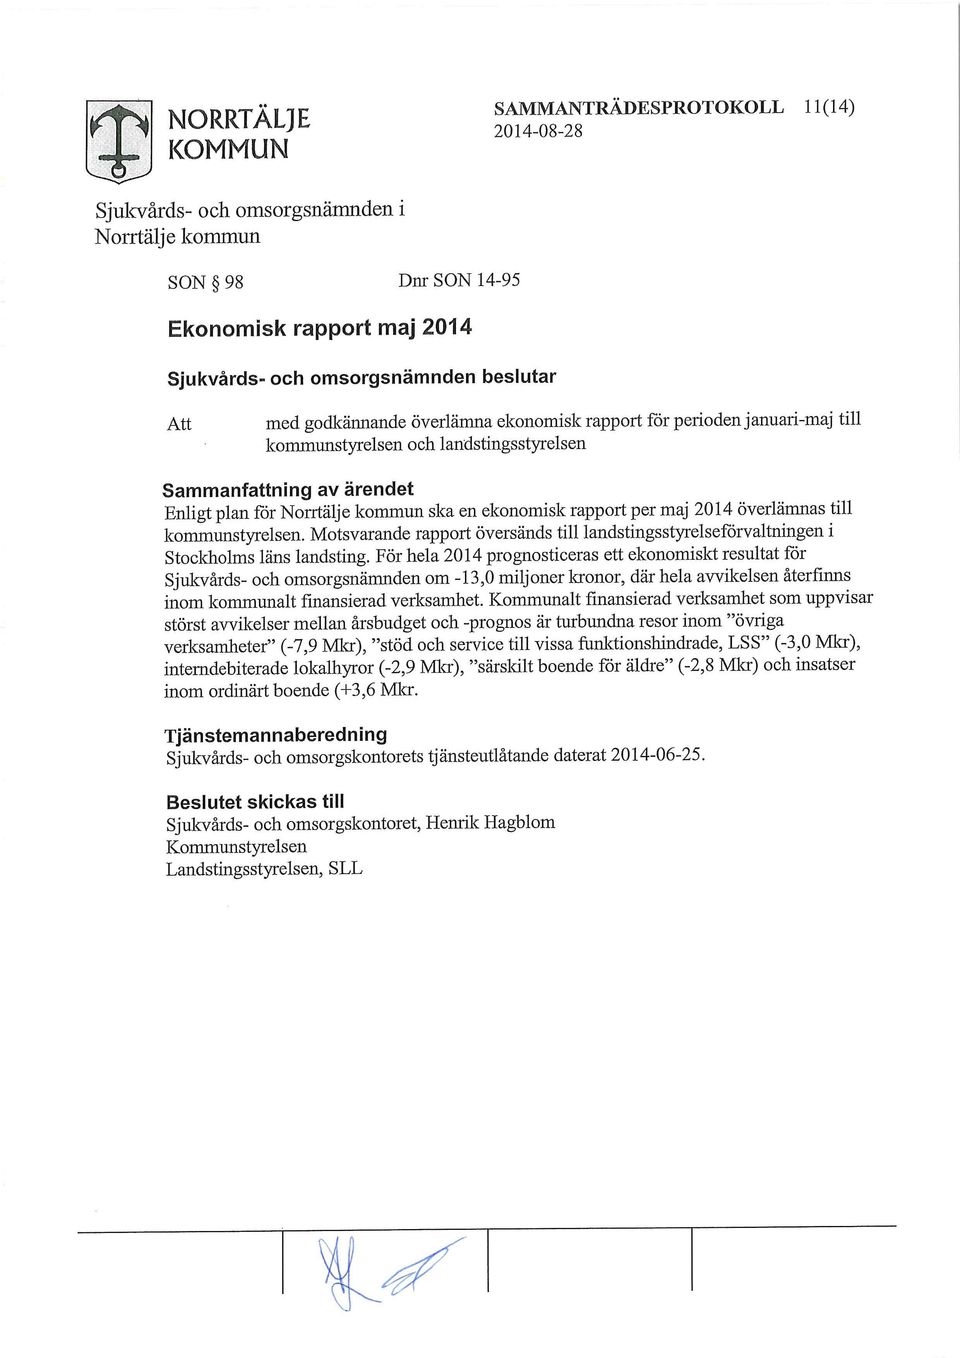 Motsvarande rapport översänds till landstingsstyrelseförvaltningen i Stockholms läns landsting.